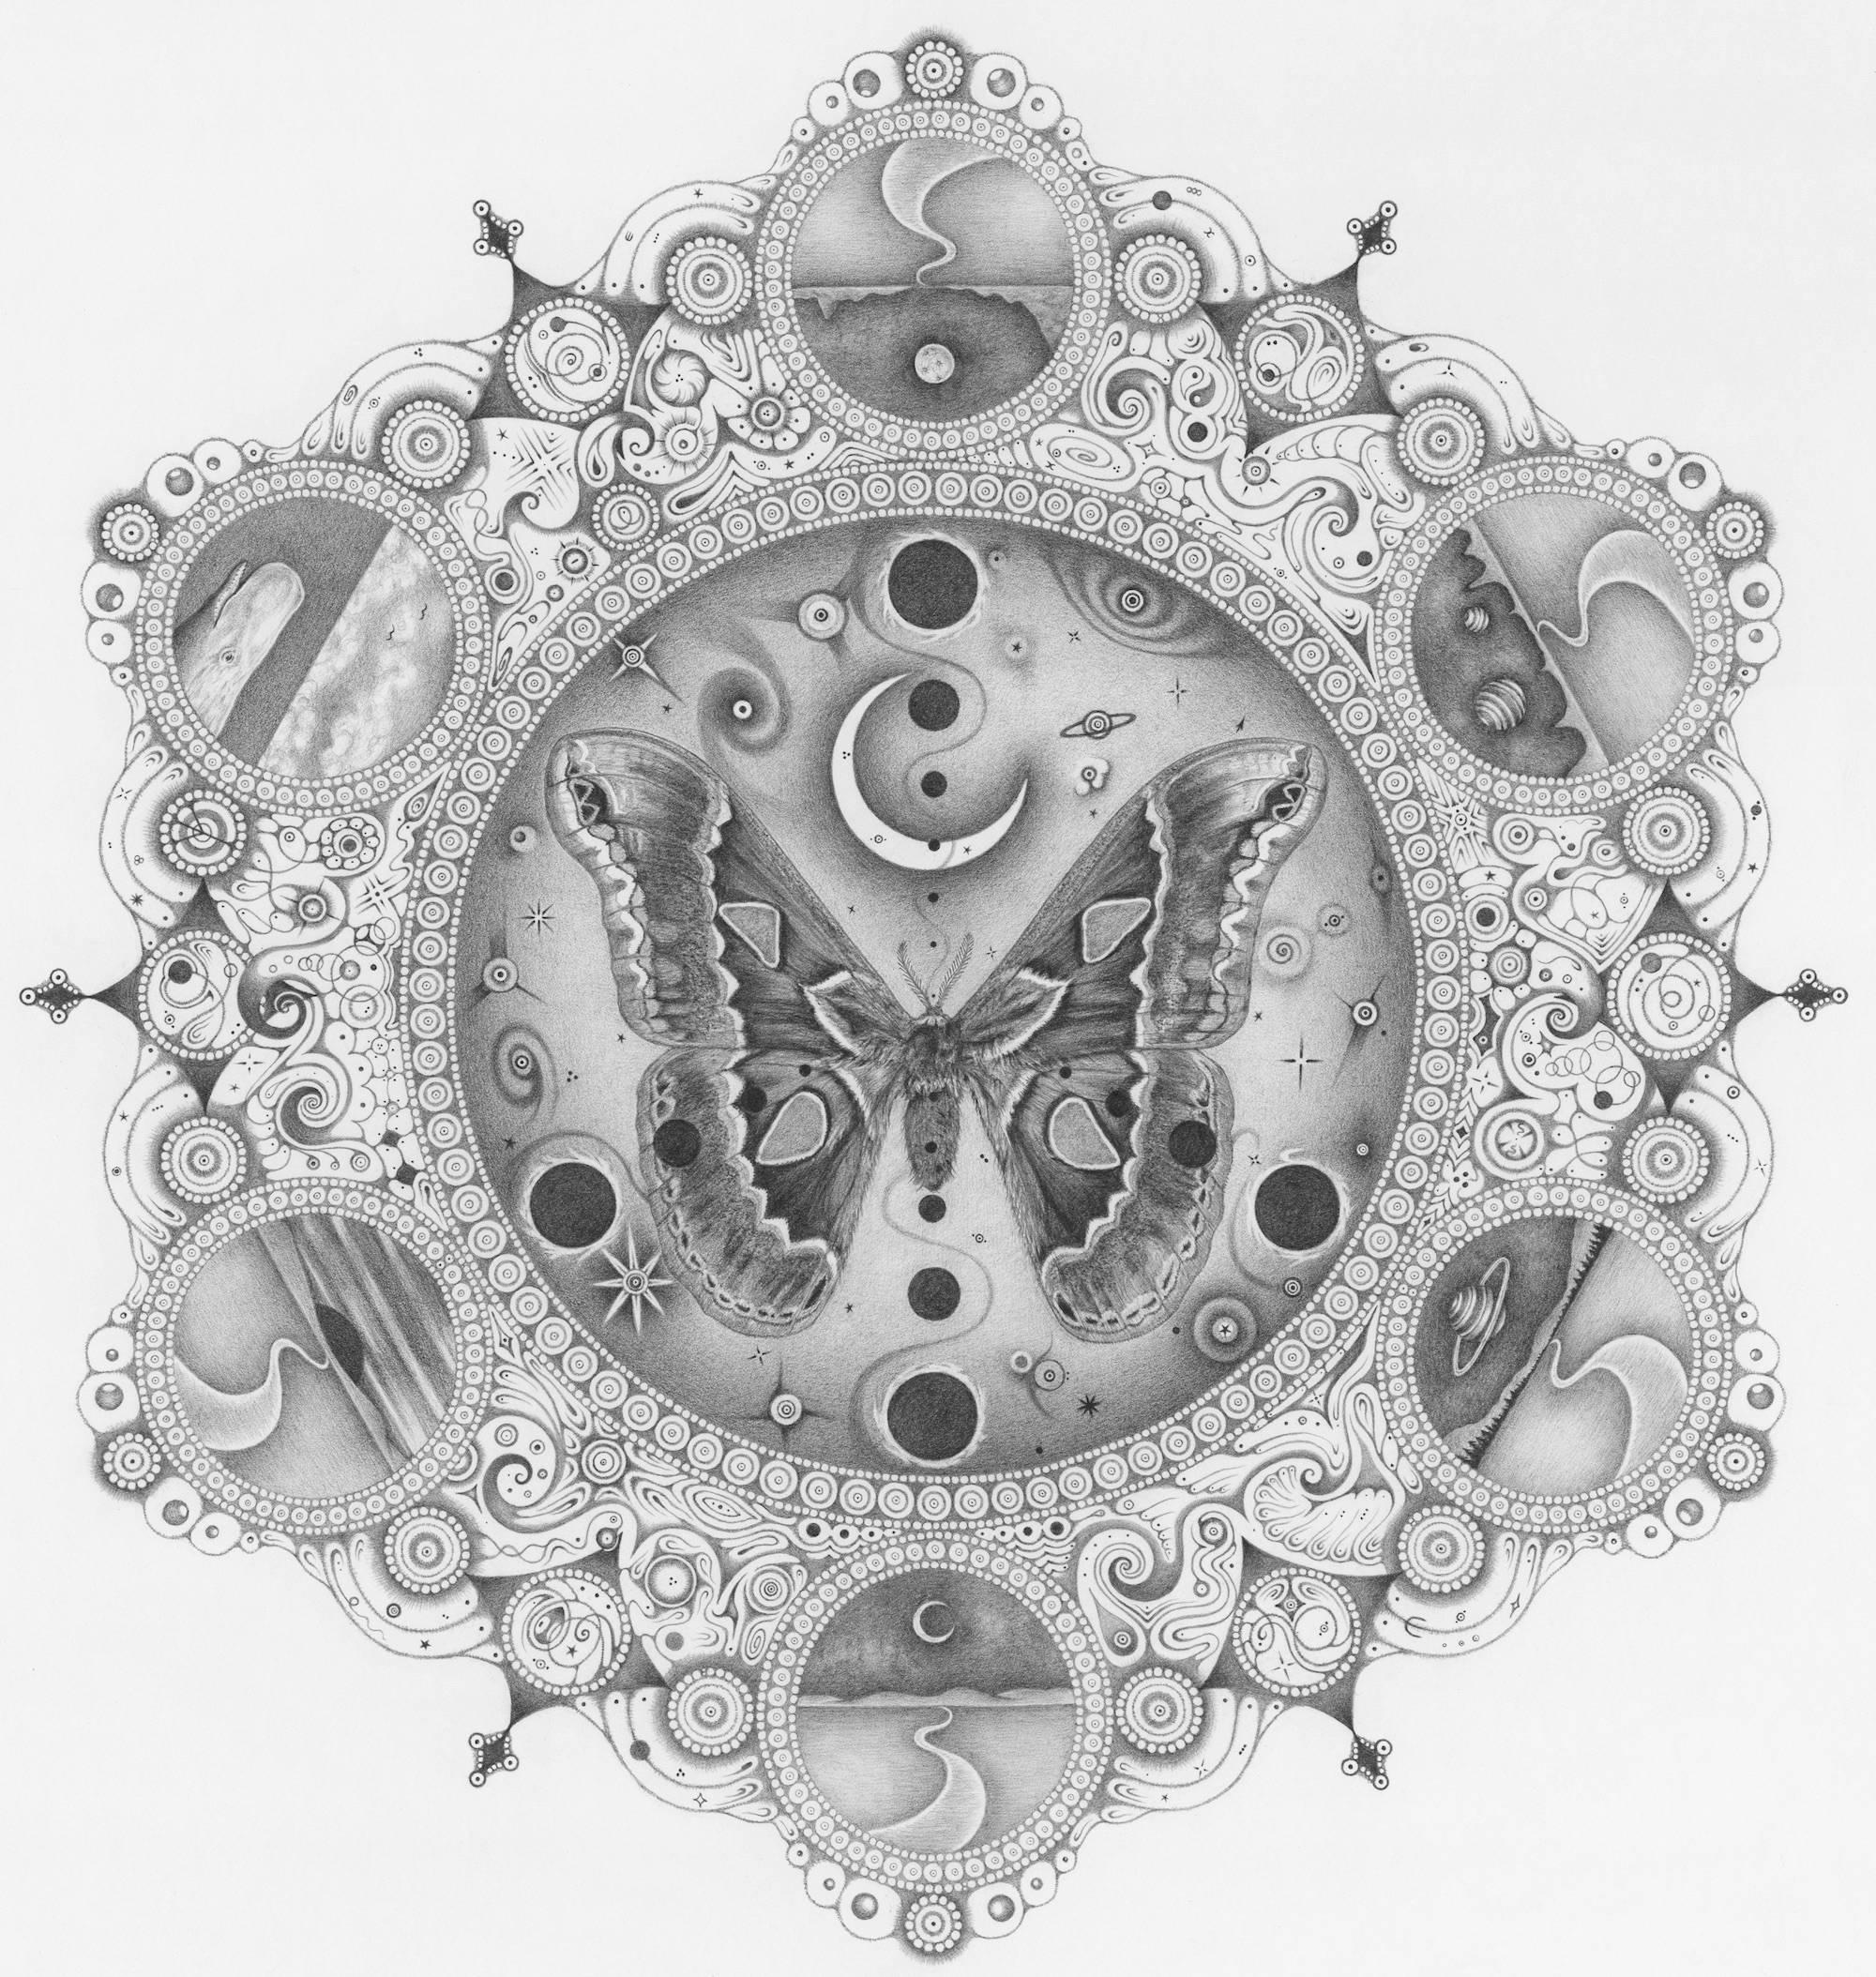 Michiyo Ihara Abstract Drawing - Snowflakes 149 Guardian Deity, Square Mandala Pencil Drawing with Moth, Planets